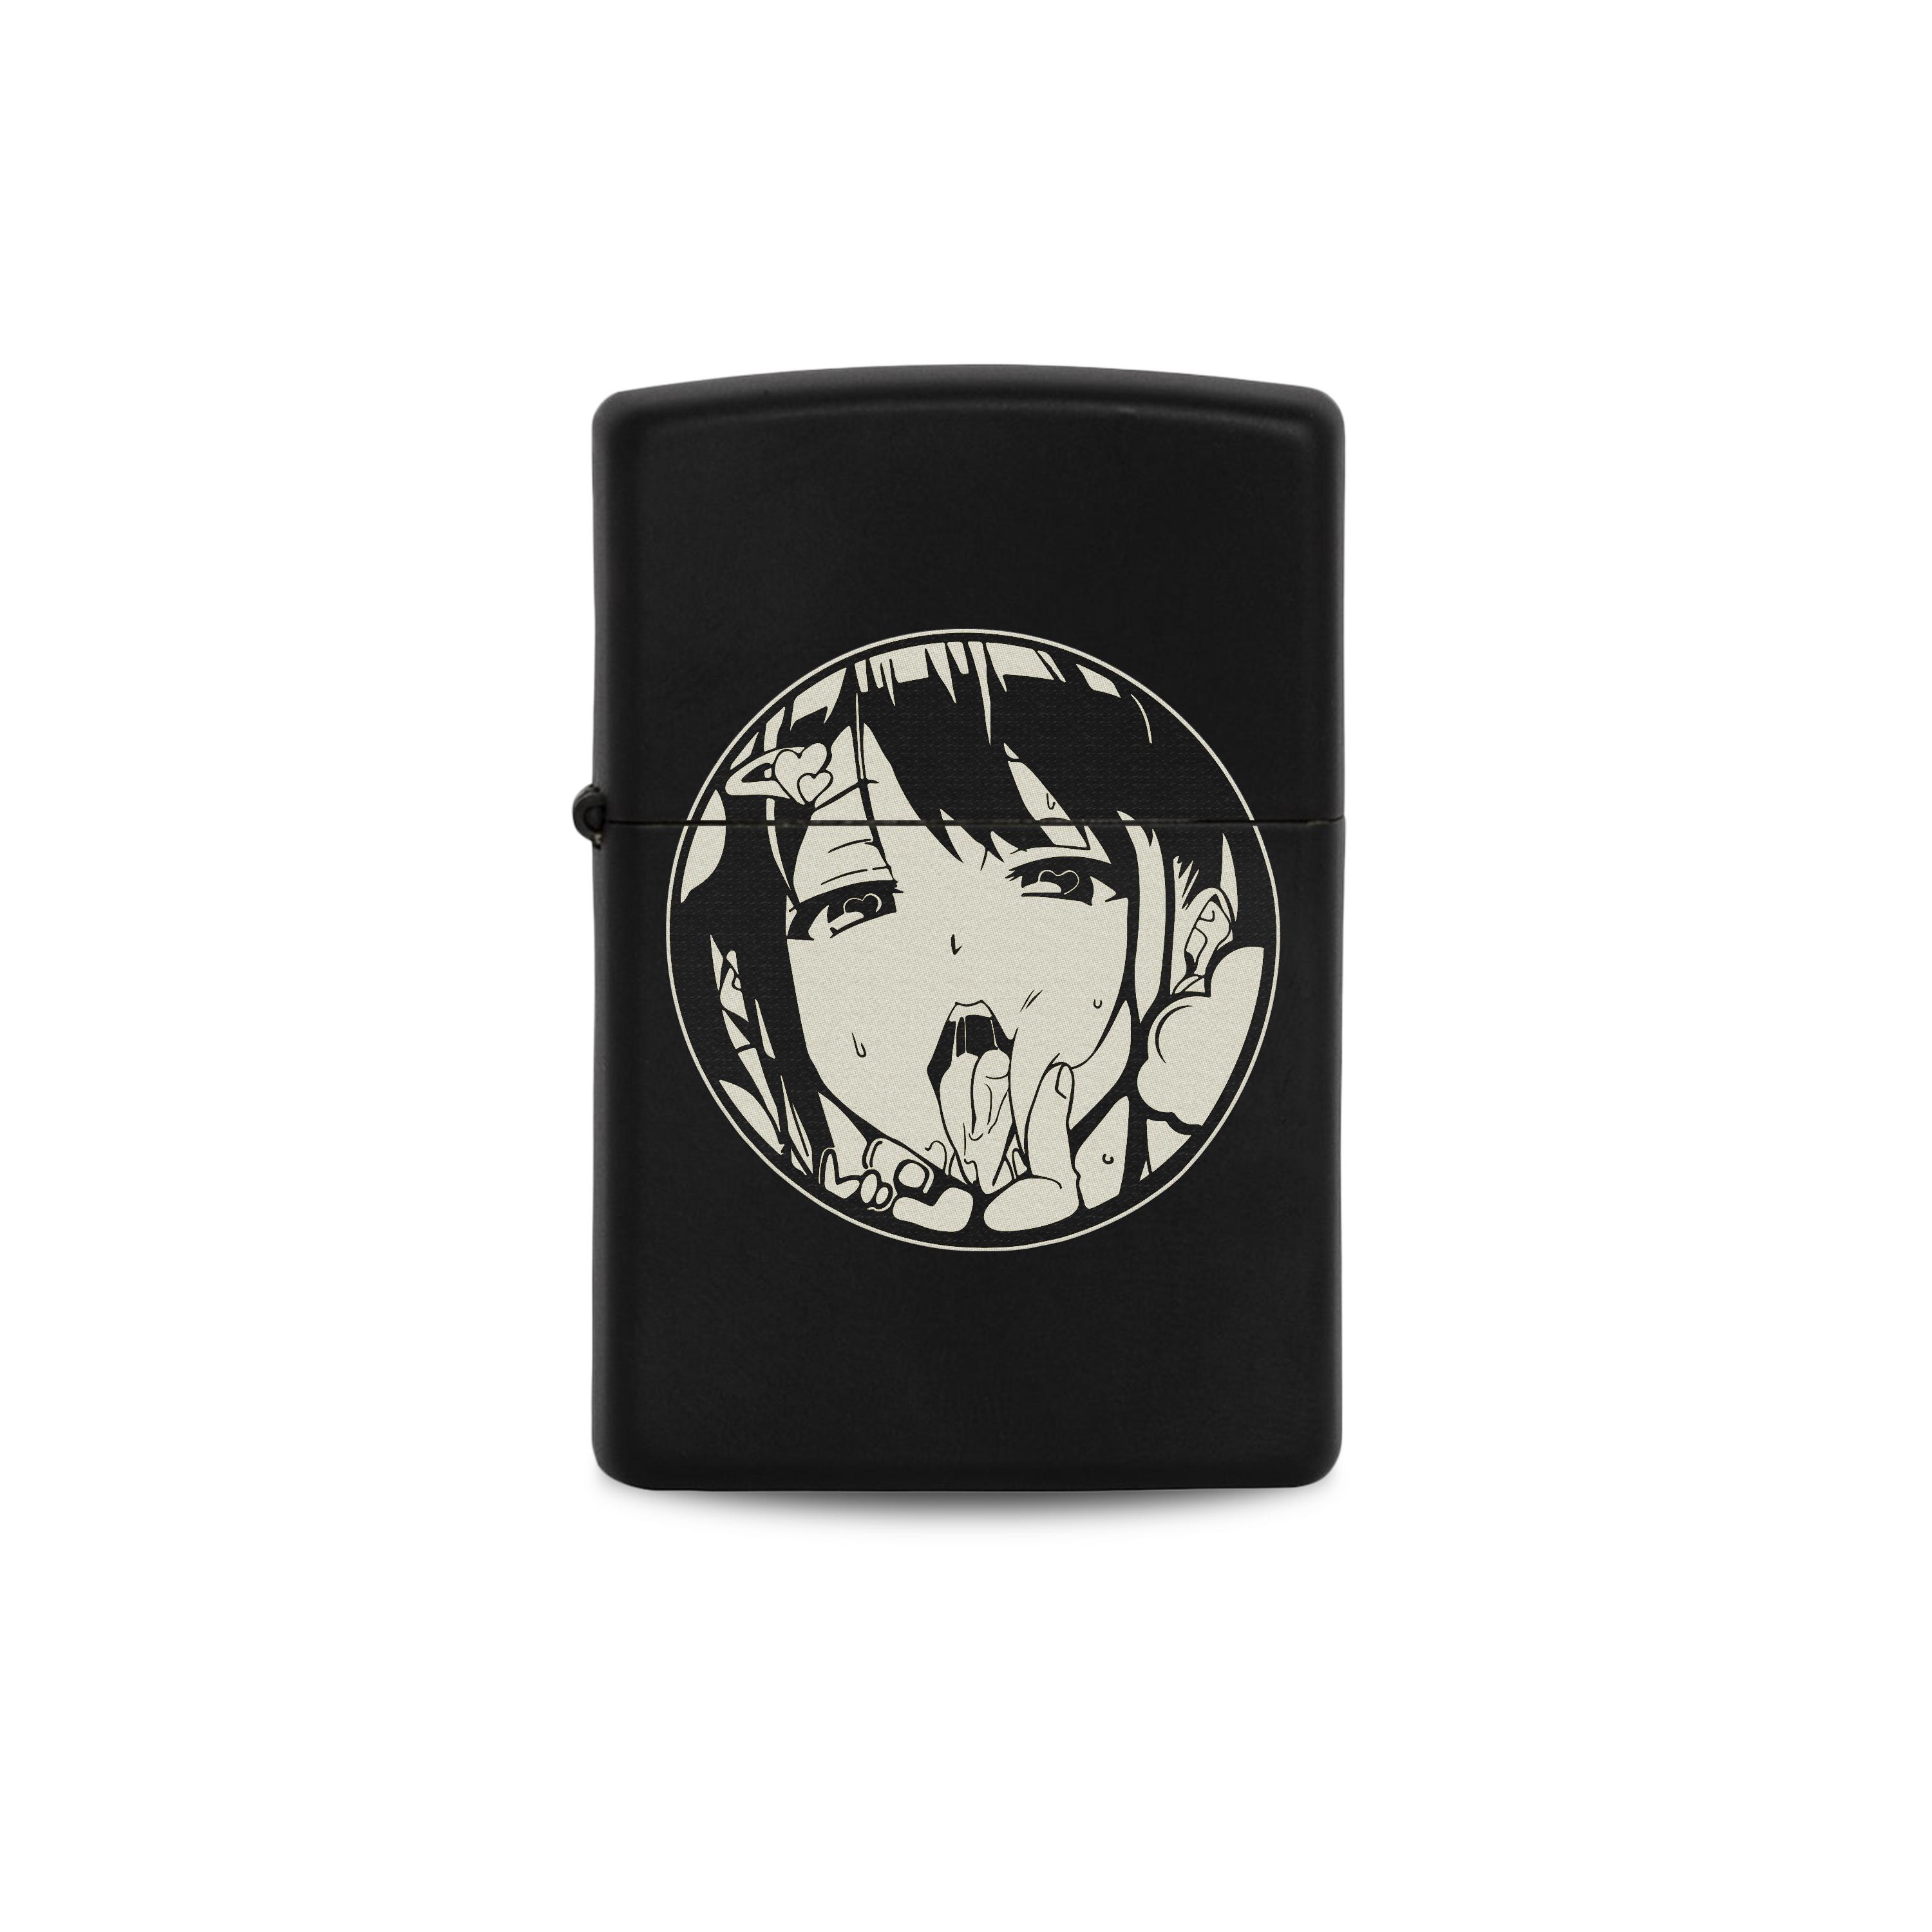 Anime Lighter and Cigarette Case Pn5842 – Pennycrafts